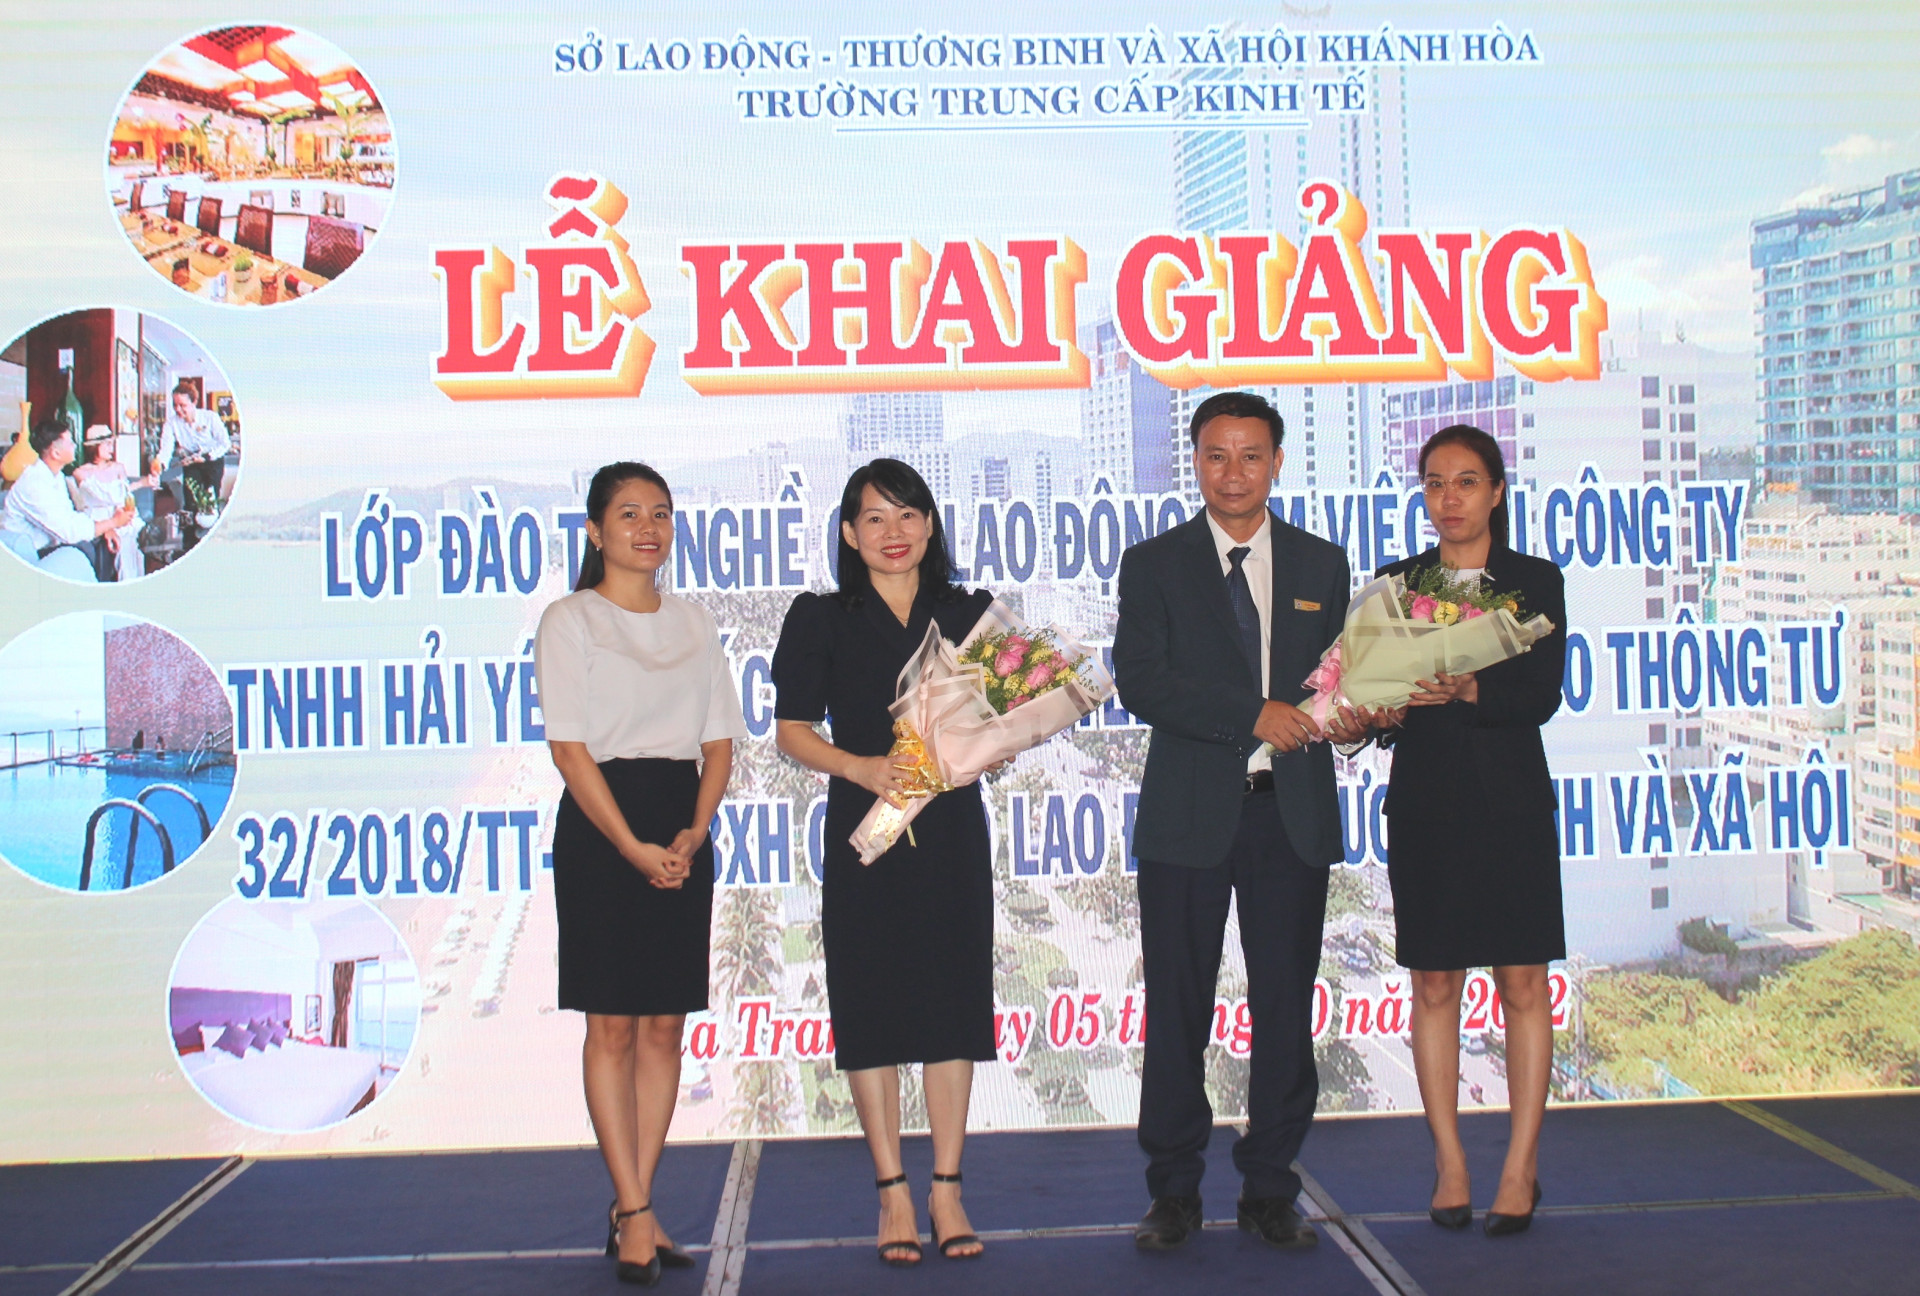 Đại diện người lao động tặng hoa cảm ơn lãnh đạo khách sạn và Trường Trung cấp Kinh tế Khánh Hòa.